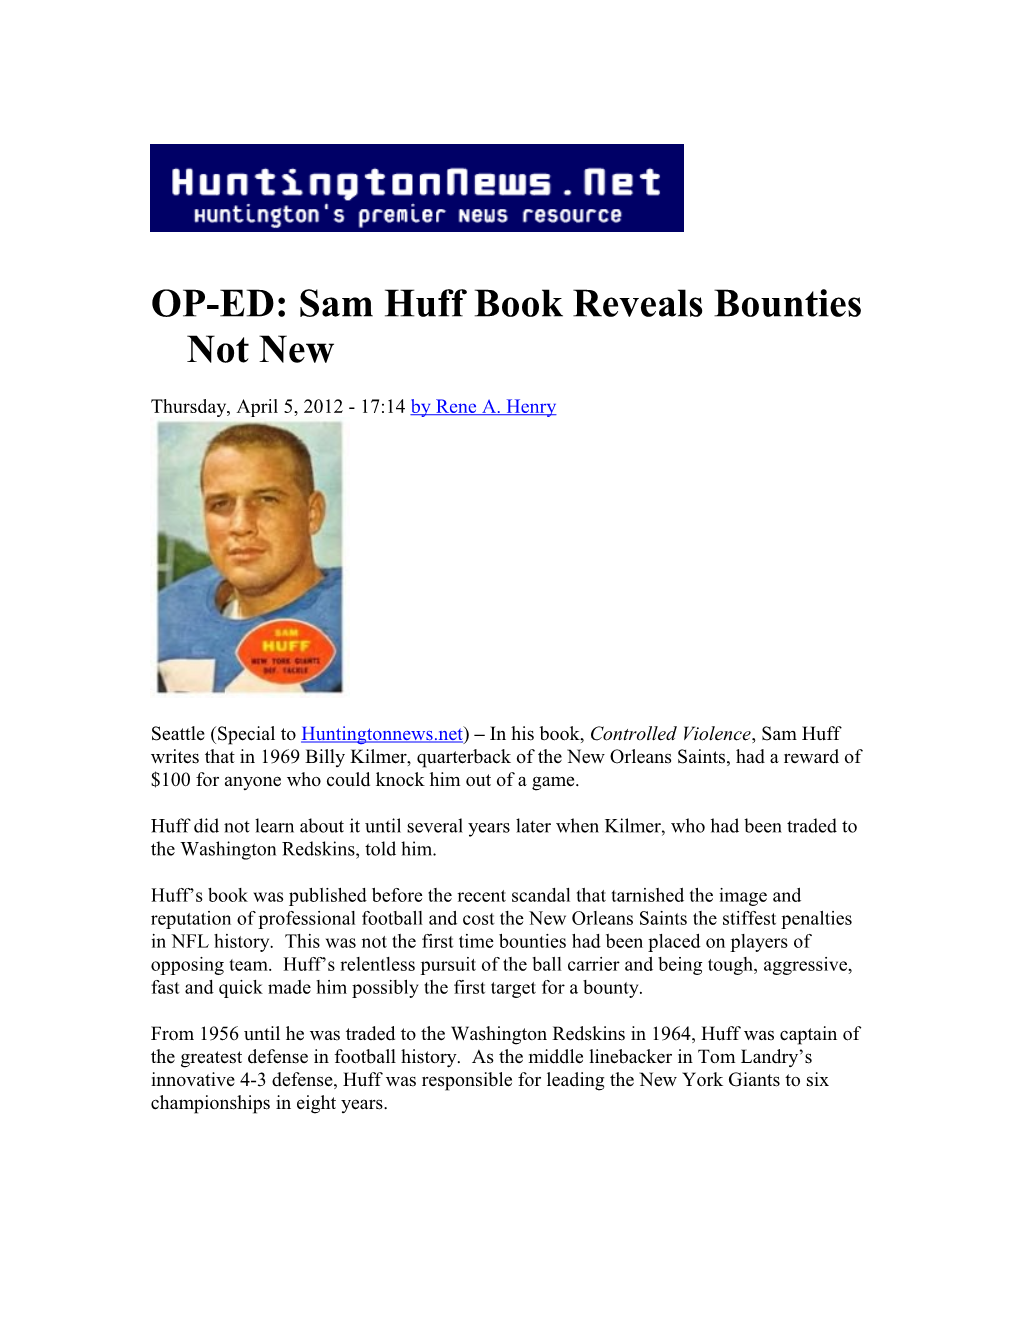 OP-ED: Sam Huff Book Reveals Bounties Not New